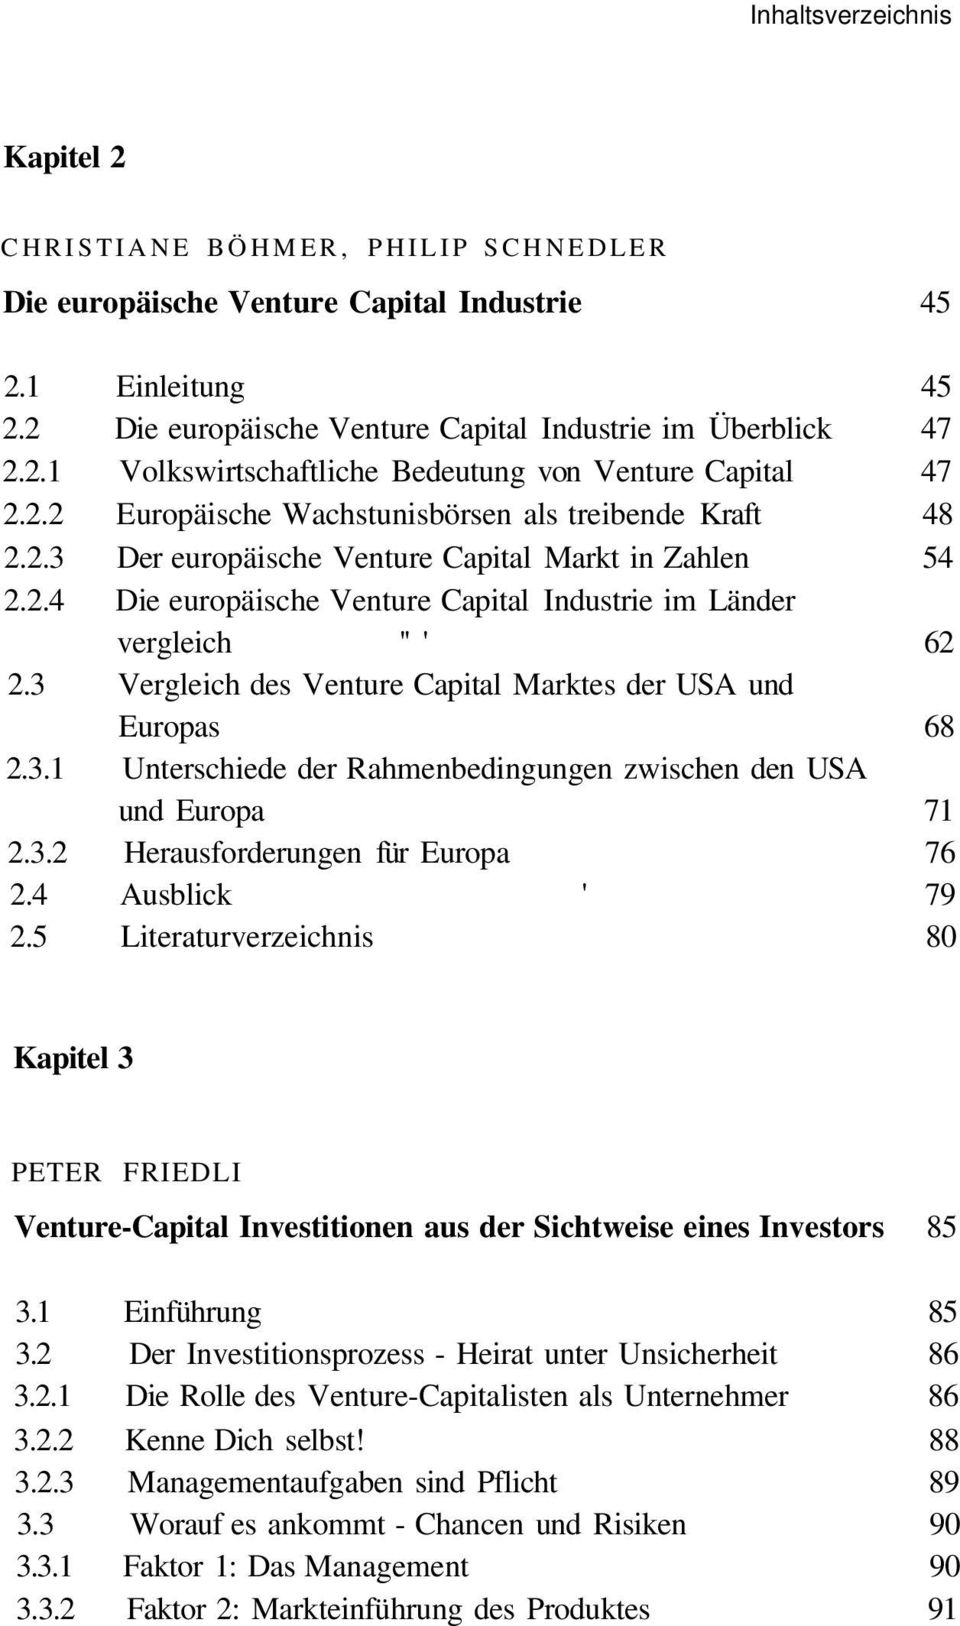 3 Vergleich des Venture Capital Marktes der USA und Europas 68 2.3.1 Unterschiede der Rahmenbedingungen zwischen den USA und Europa 71 2.3.2 Herausforderungen für Europa 76 2.4 Ausblick ' 79 2.